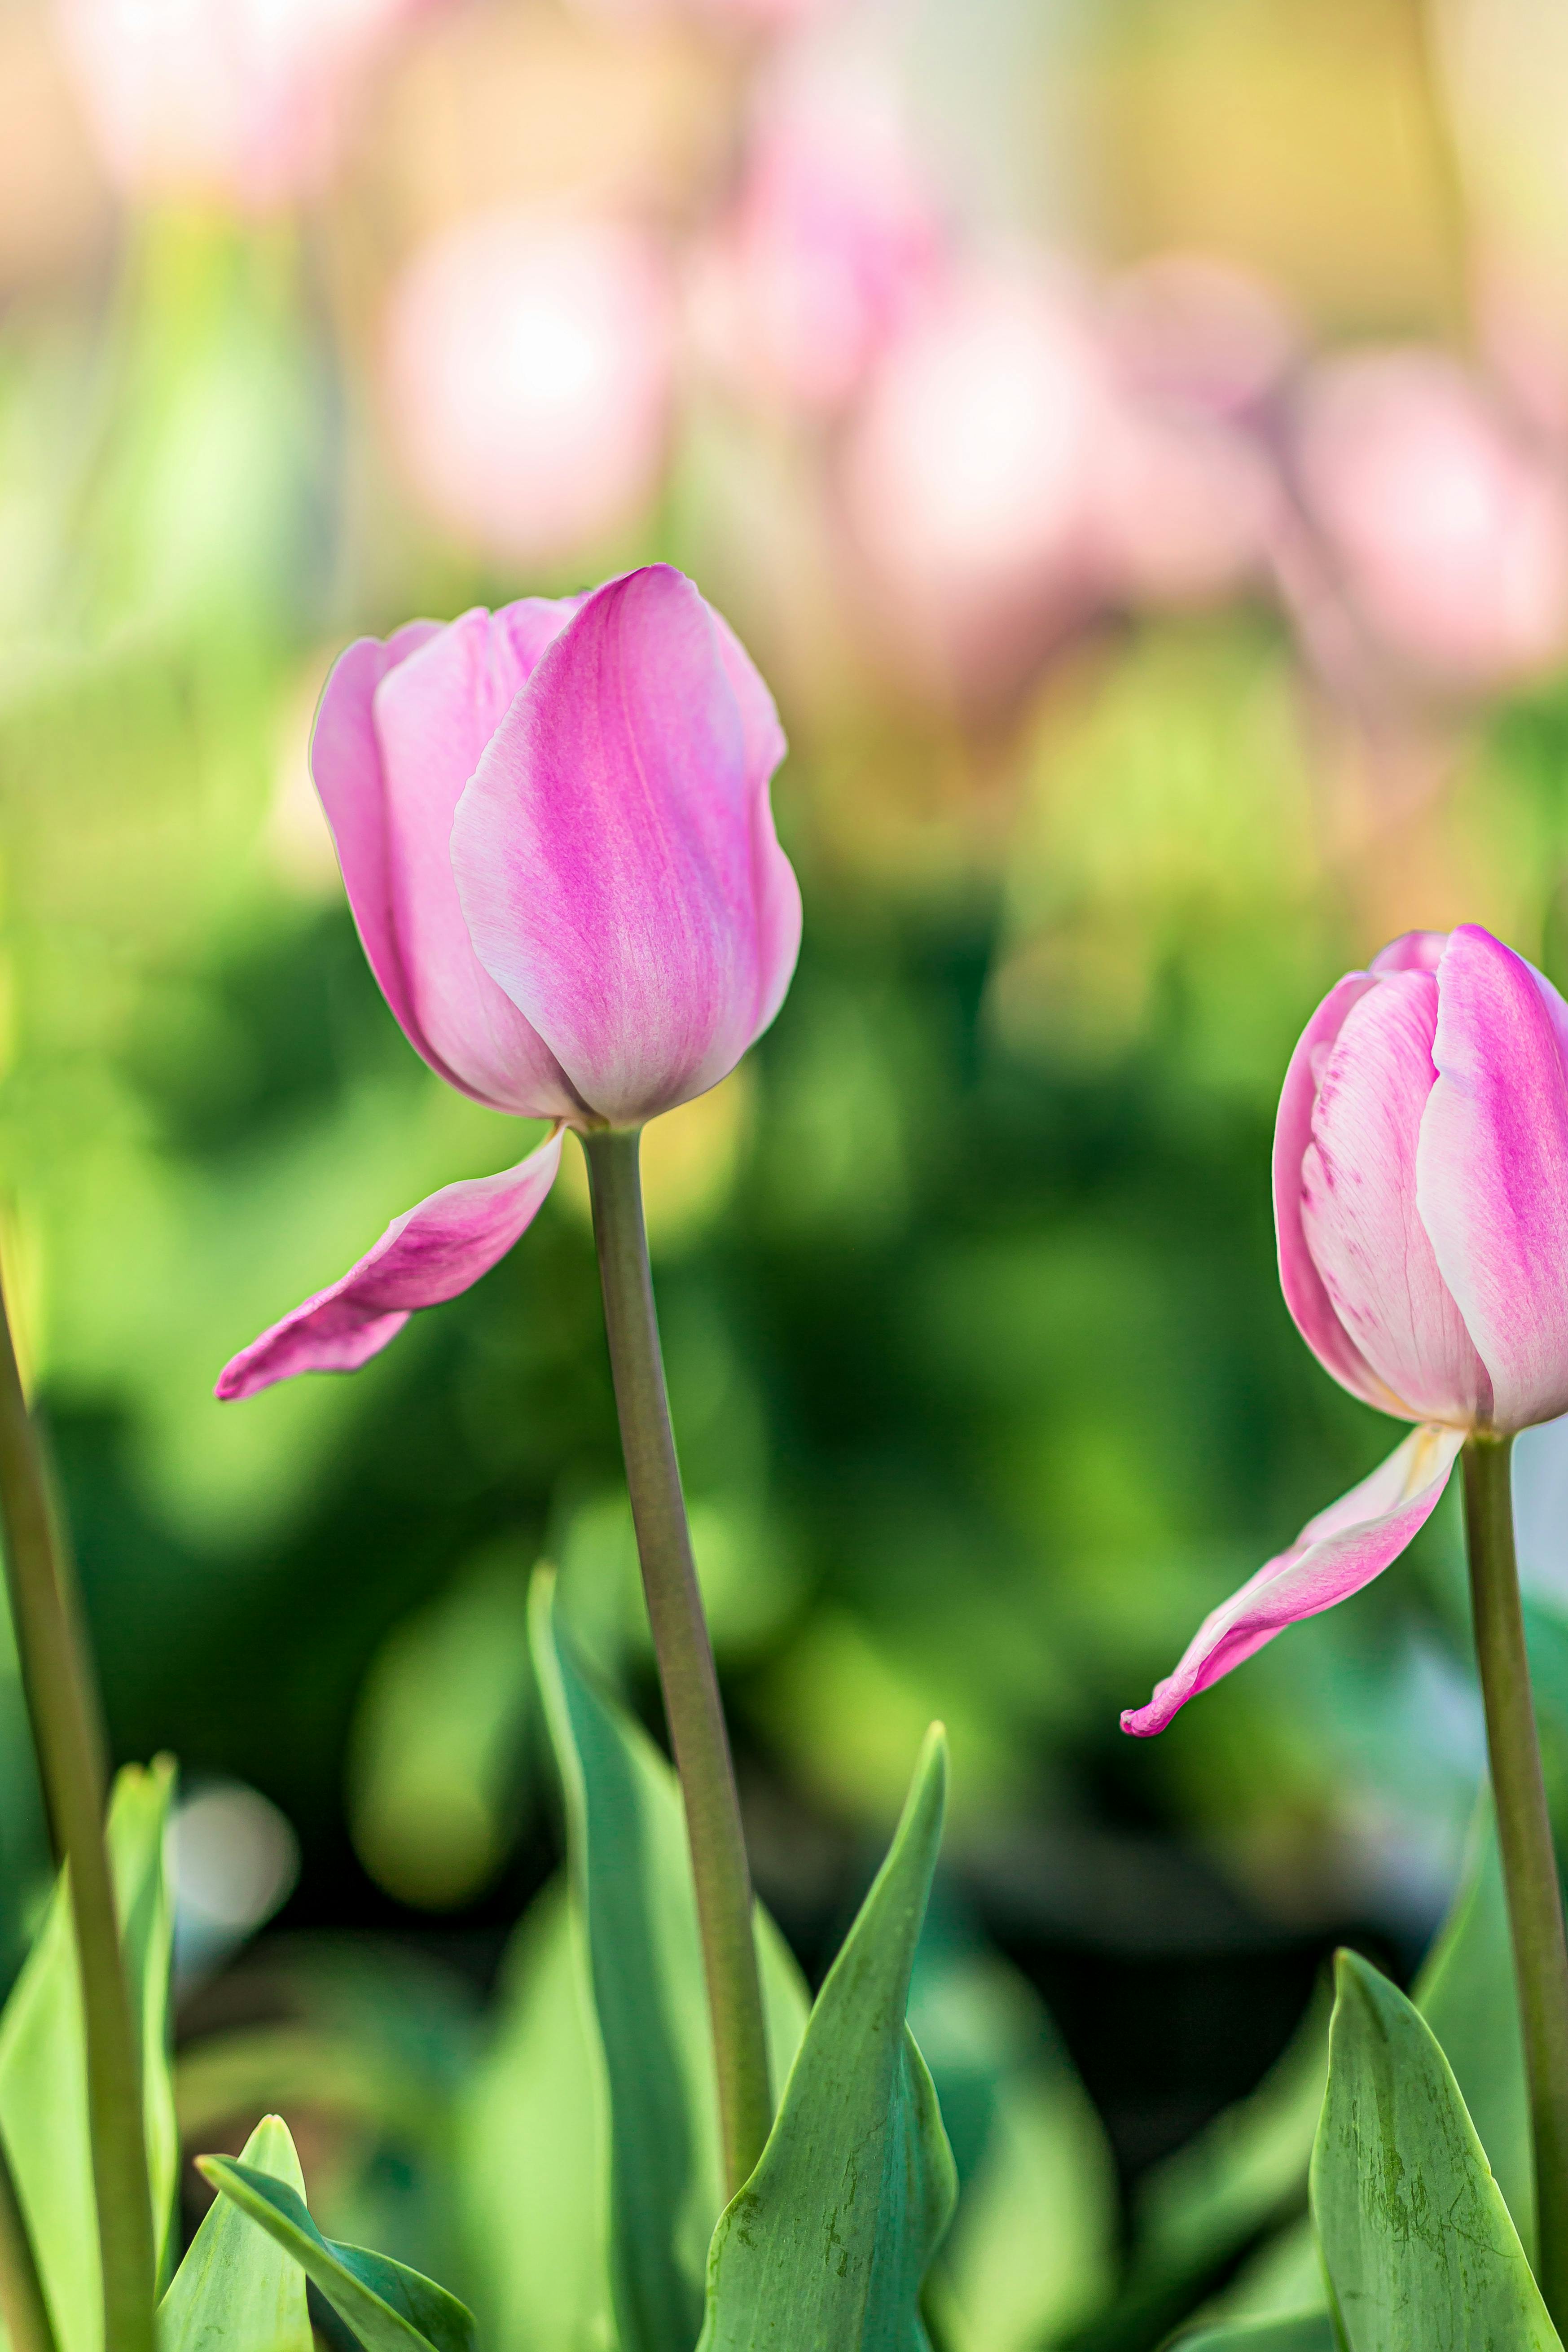 Bạn đang tìm kiếm một hình nền độc đáo, tinh tế và cực kì sành điệu? Hãy thử đặt hình nền hoa tulip hồng trên màn hình điện thoại của bạn và cảm nhận sự tươi mới, nữ tính mà nó đem lại.